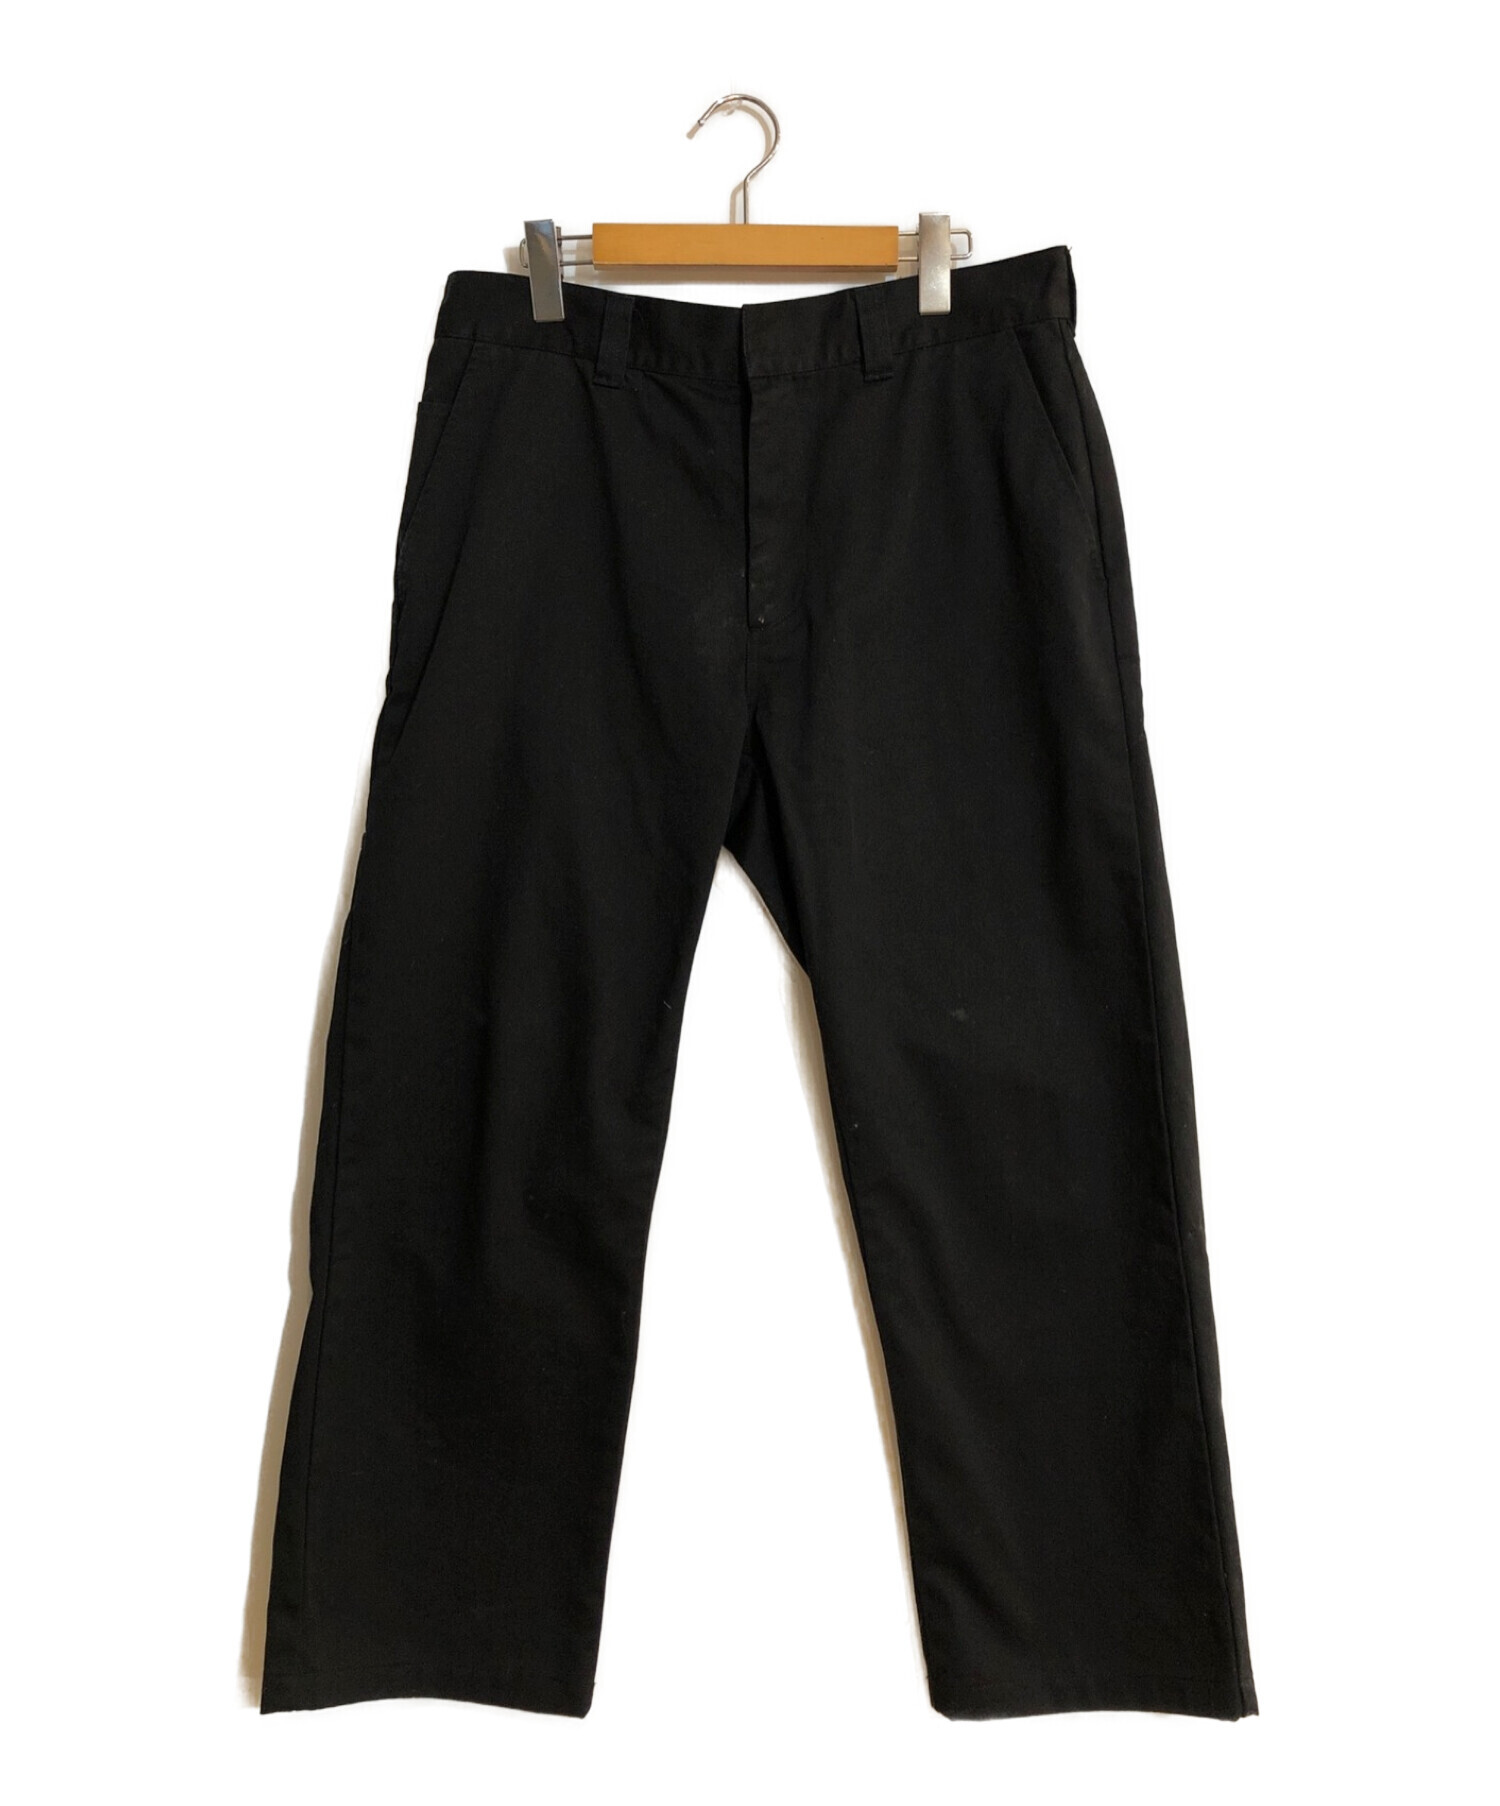 supreme work pants black サイズ32 - ワークパンツ/カーゴパンツ